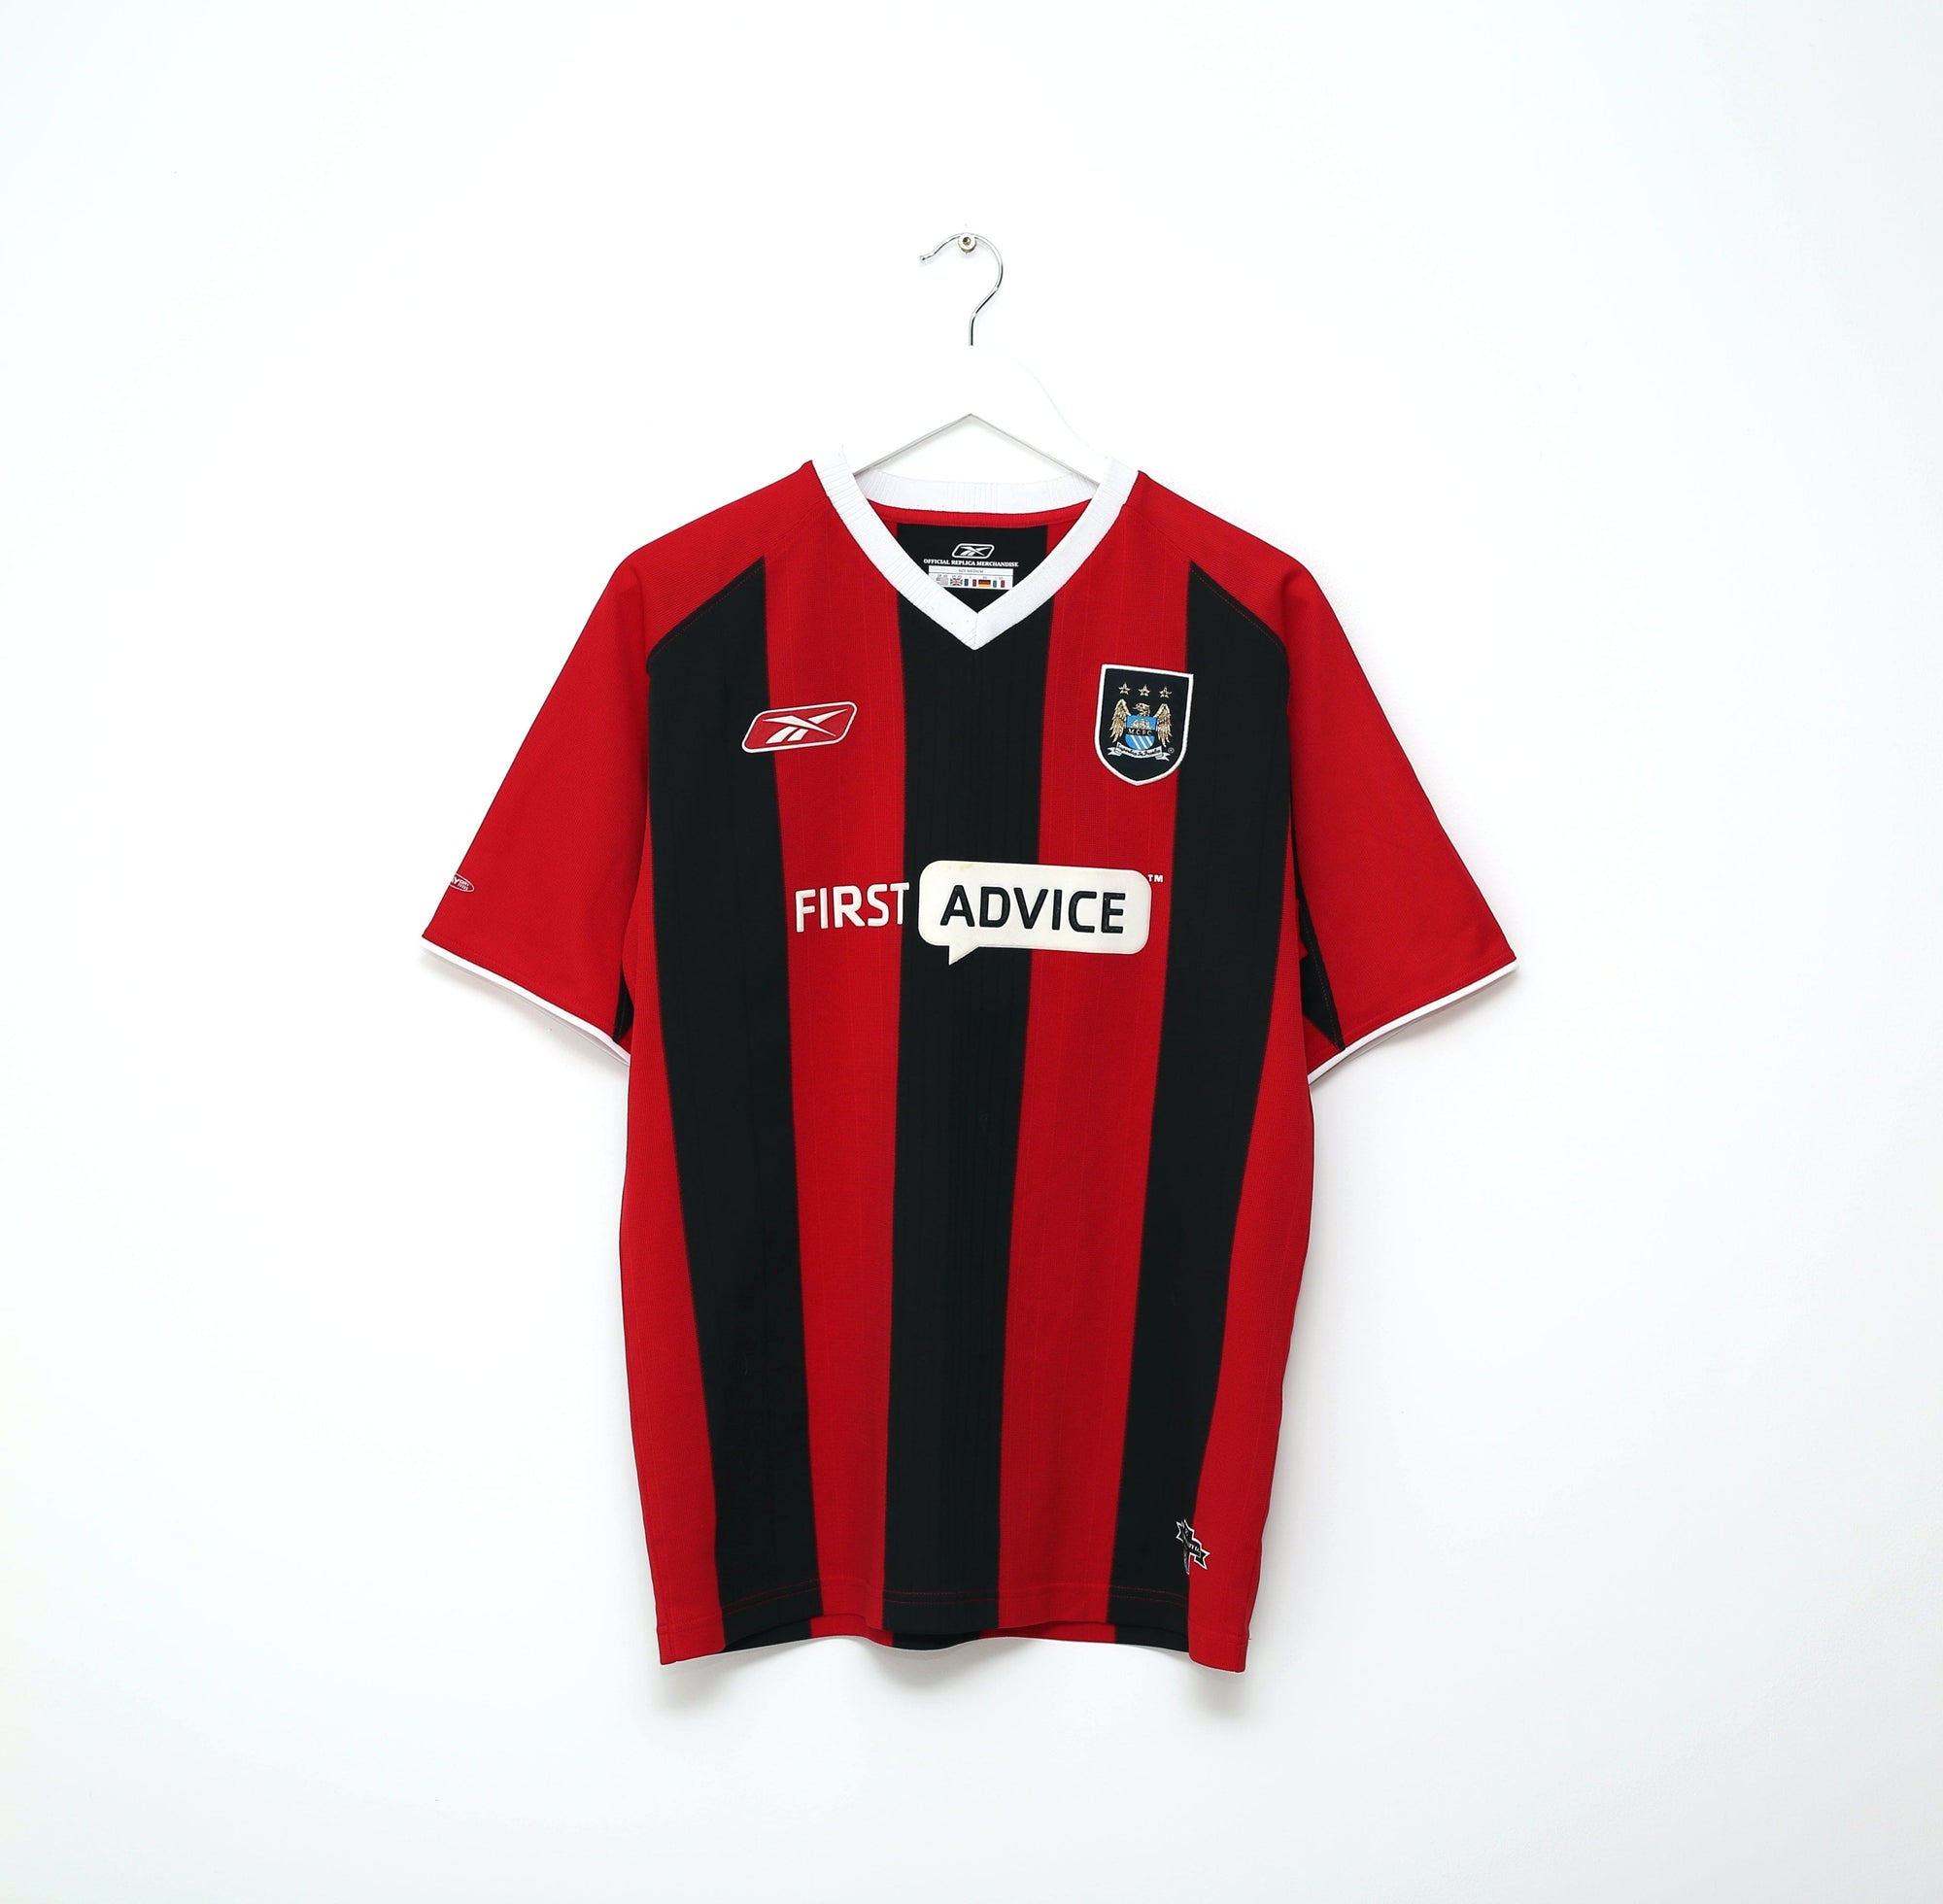 2003/04 SUN #17 Manchester City Vintage Reebok Away Football Shirt Jersey (M)